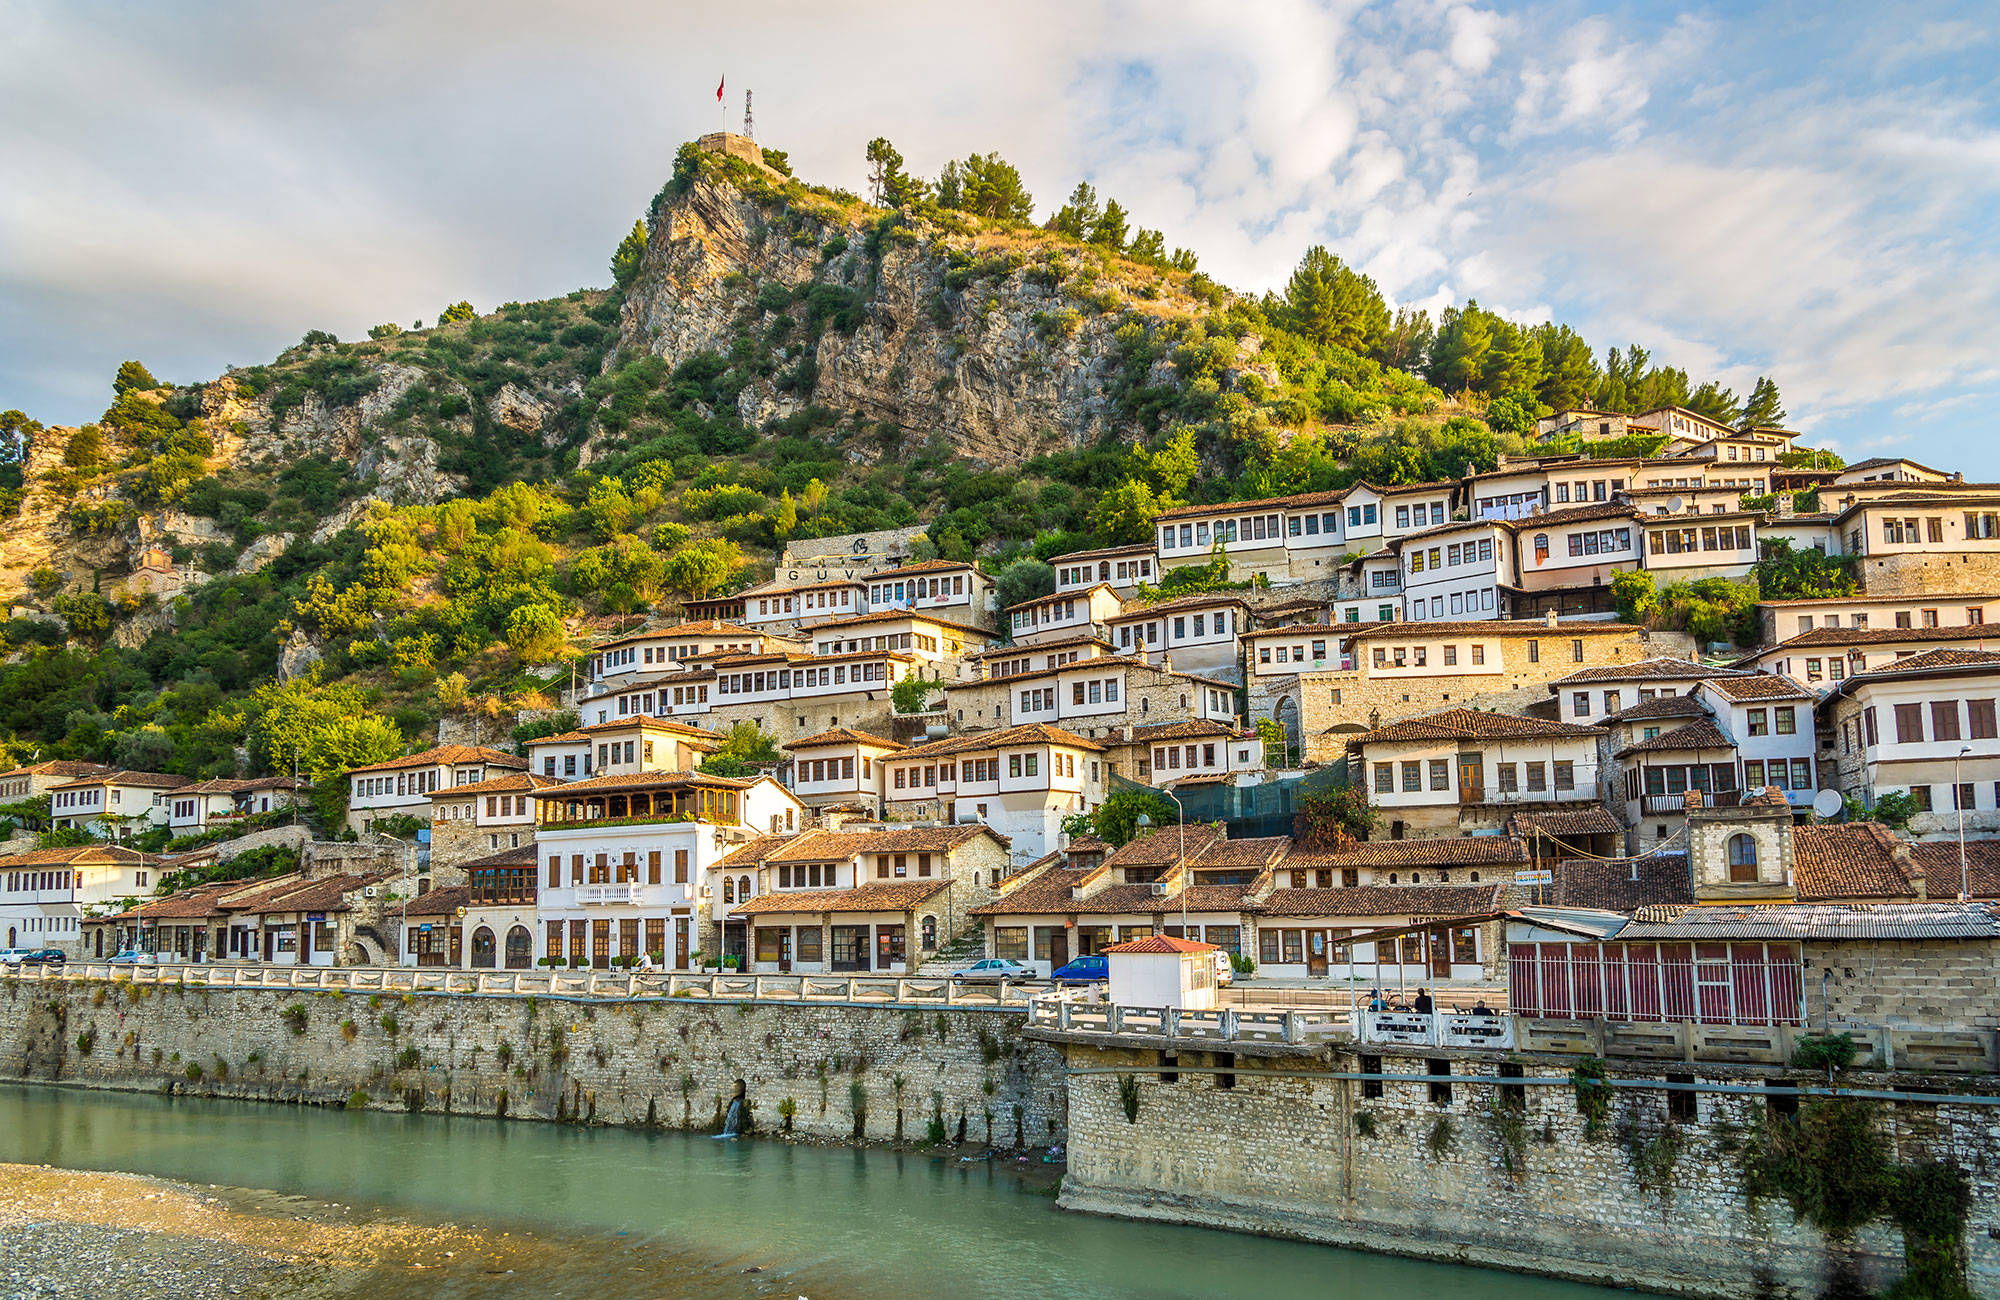 byggnader längs en flod i albanien